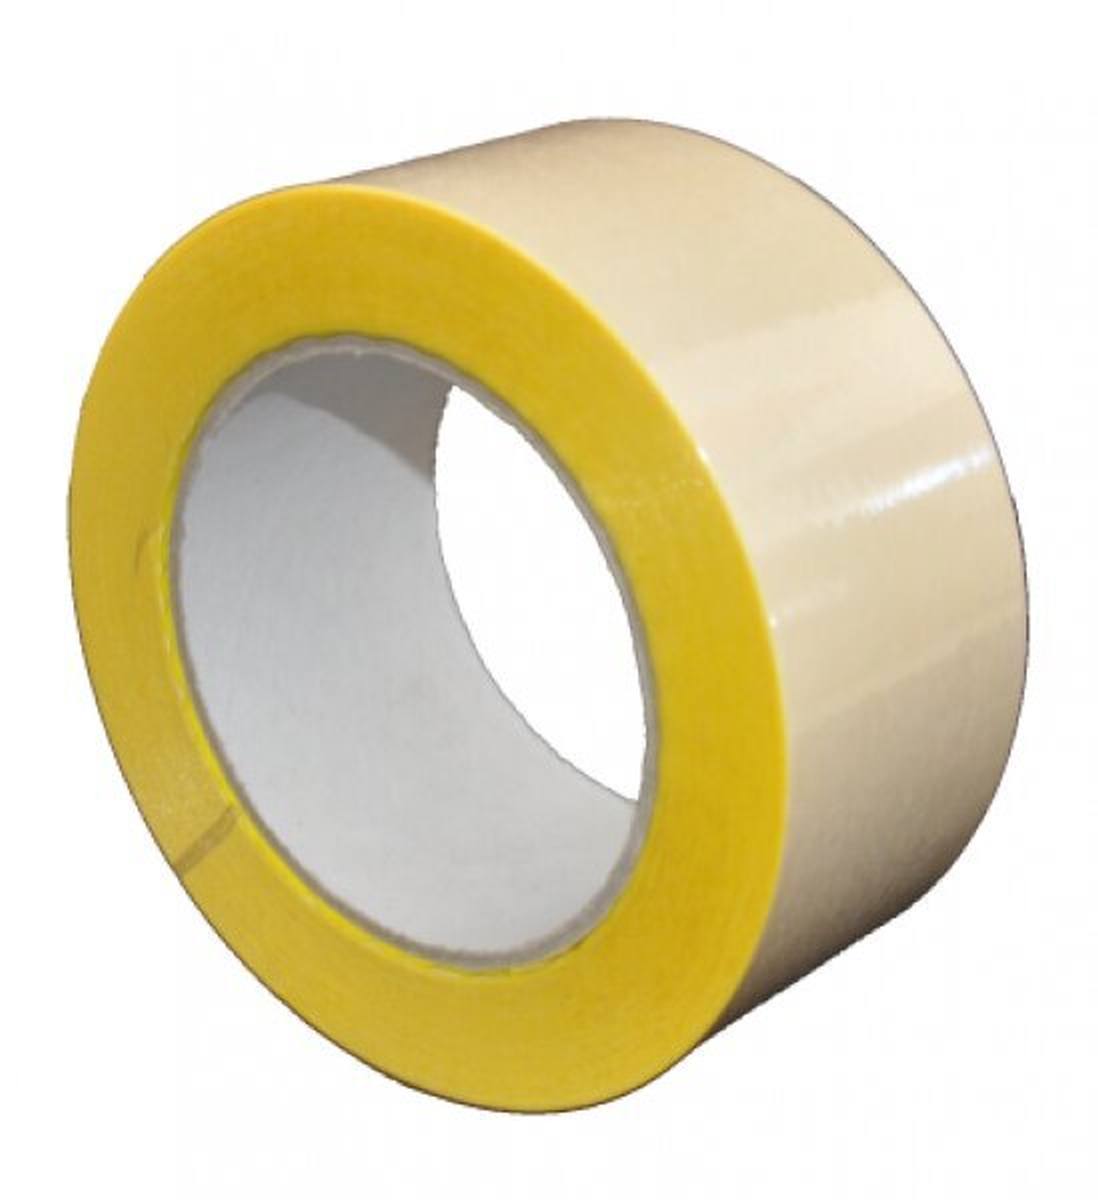 S-K-S 407 Cinta adhesiva de doble cara con soporte de polipropileno, alta / baja adhesividad, amarilla, 350 mm x 50 m, 0,15 mm